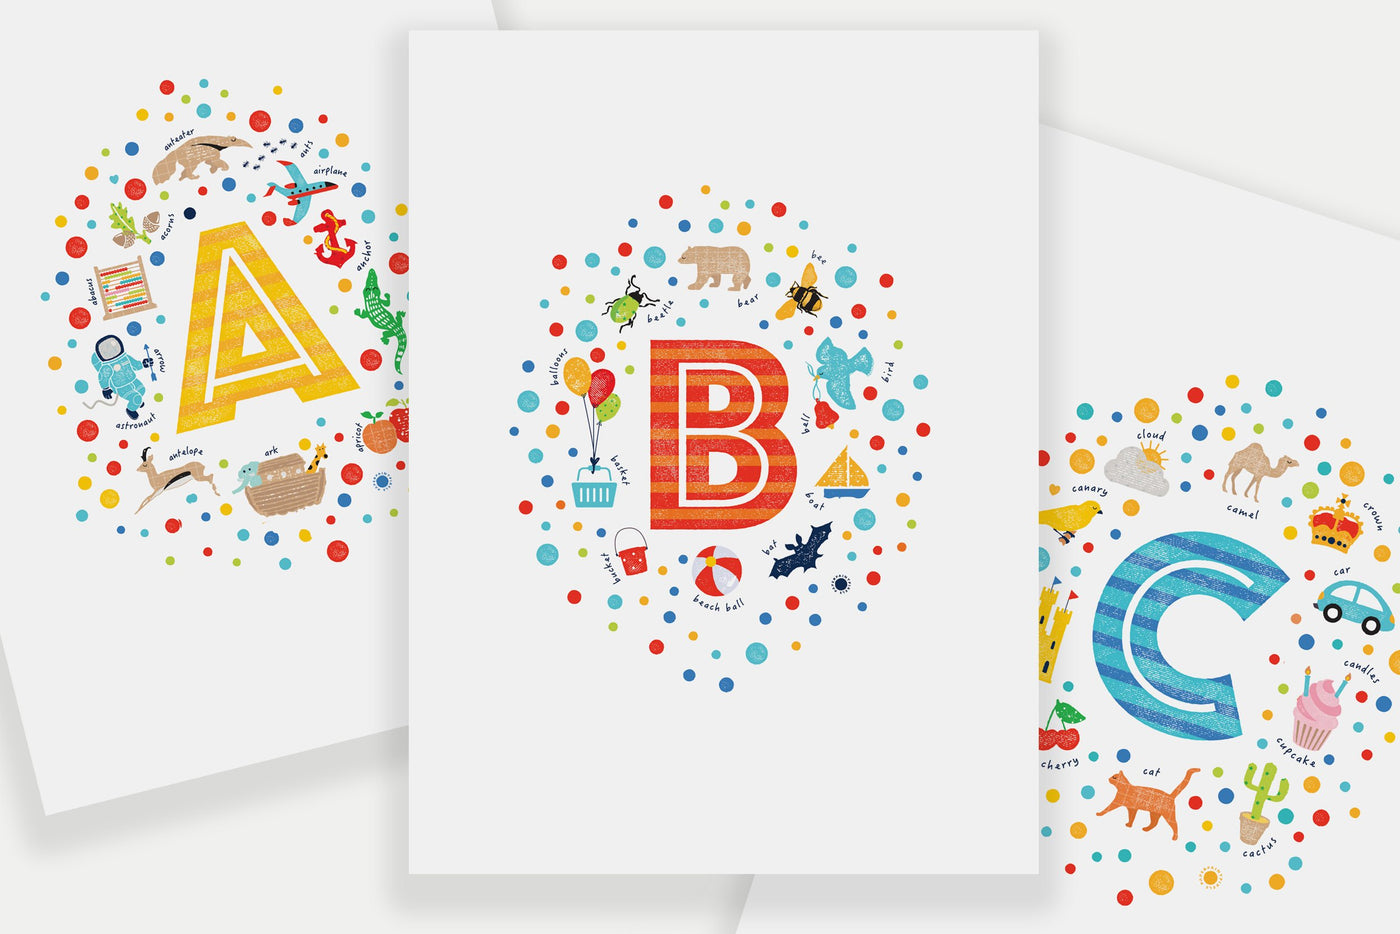 Nursery Decor Letter Prints - ABC - PaperPaintPixels